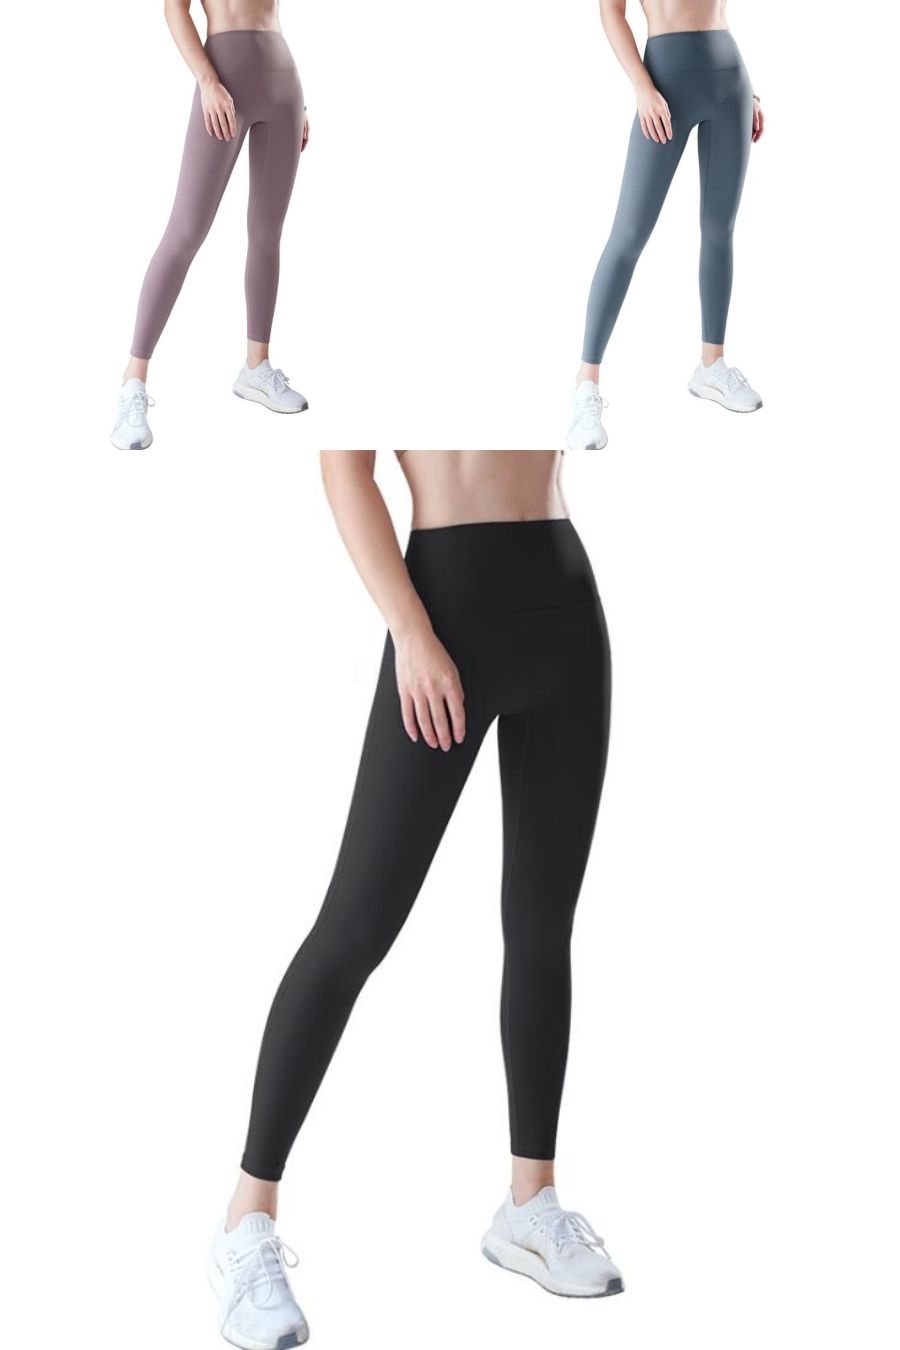 Top Gym Leggings Brands For Women 2020